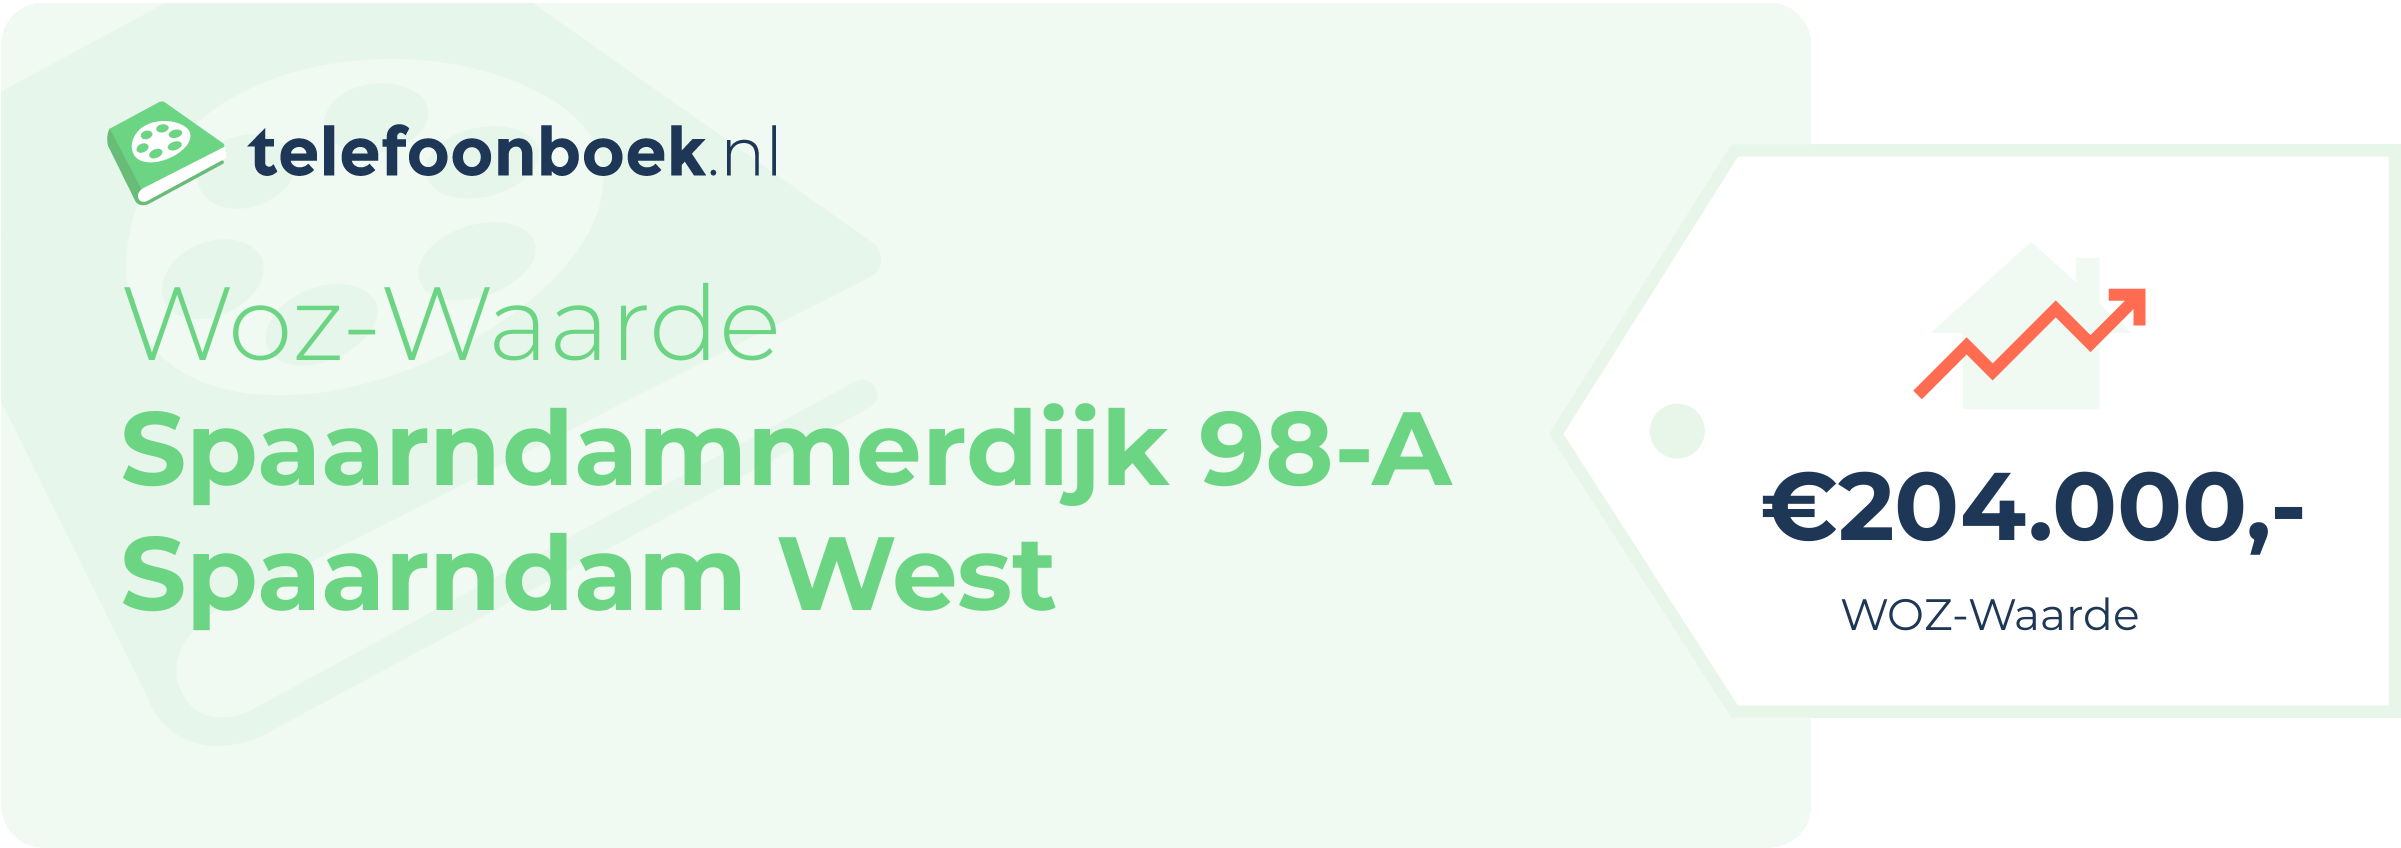 WOZ-waarde Spaarndammerdijk 98-A Spaarndam West